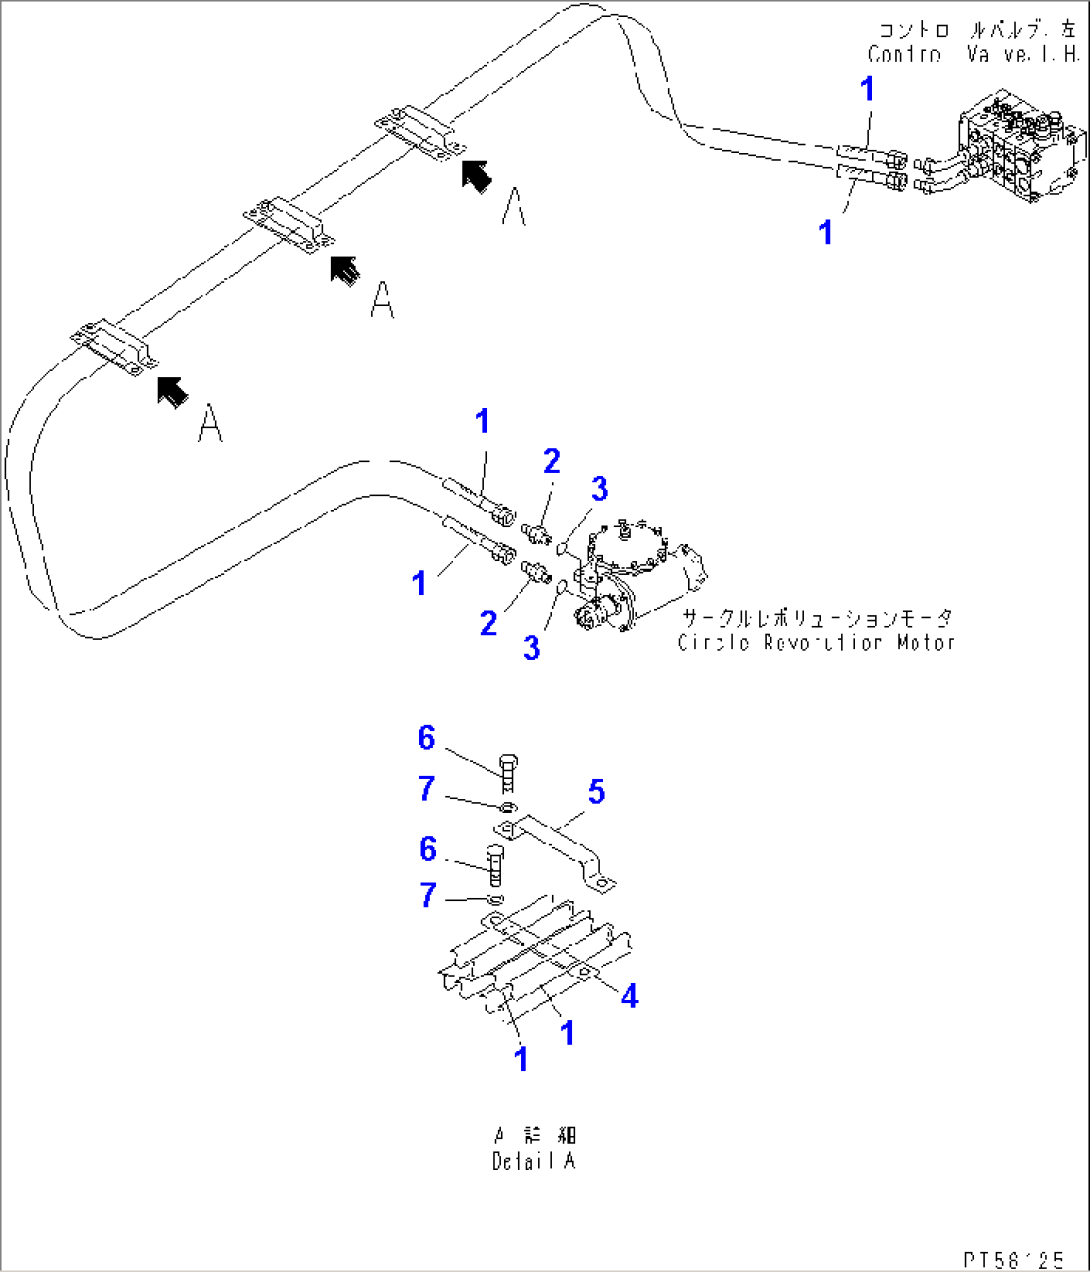 HYDRAULIC PIPING (HYDRAULIC MOTOR LINE)